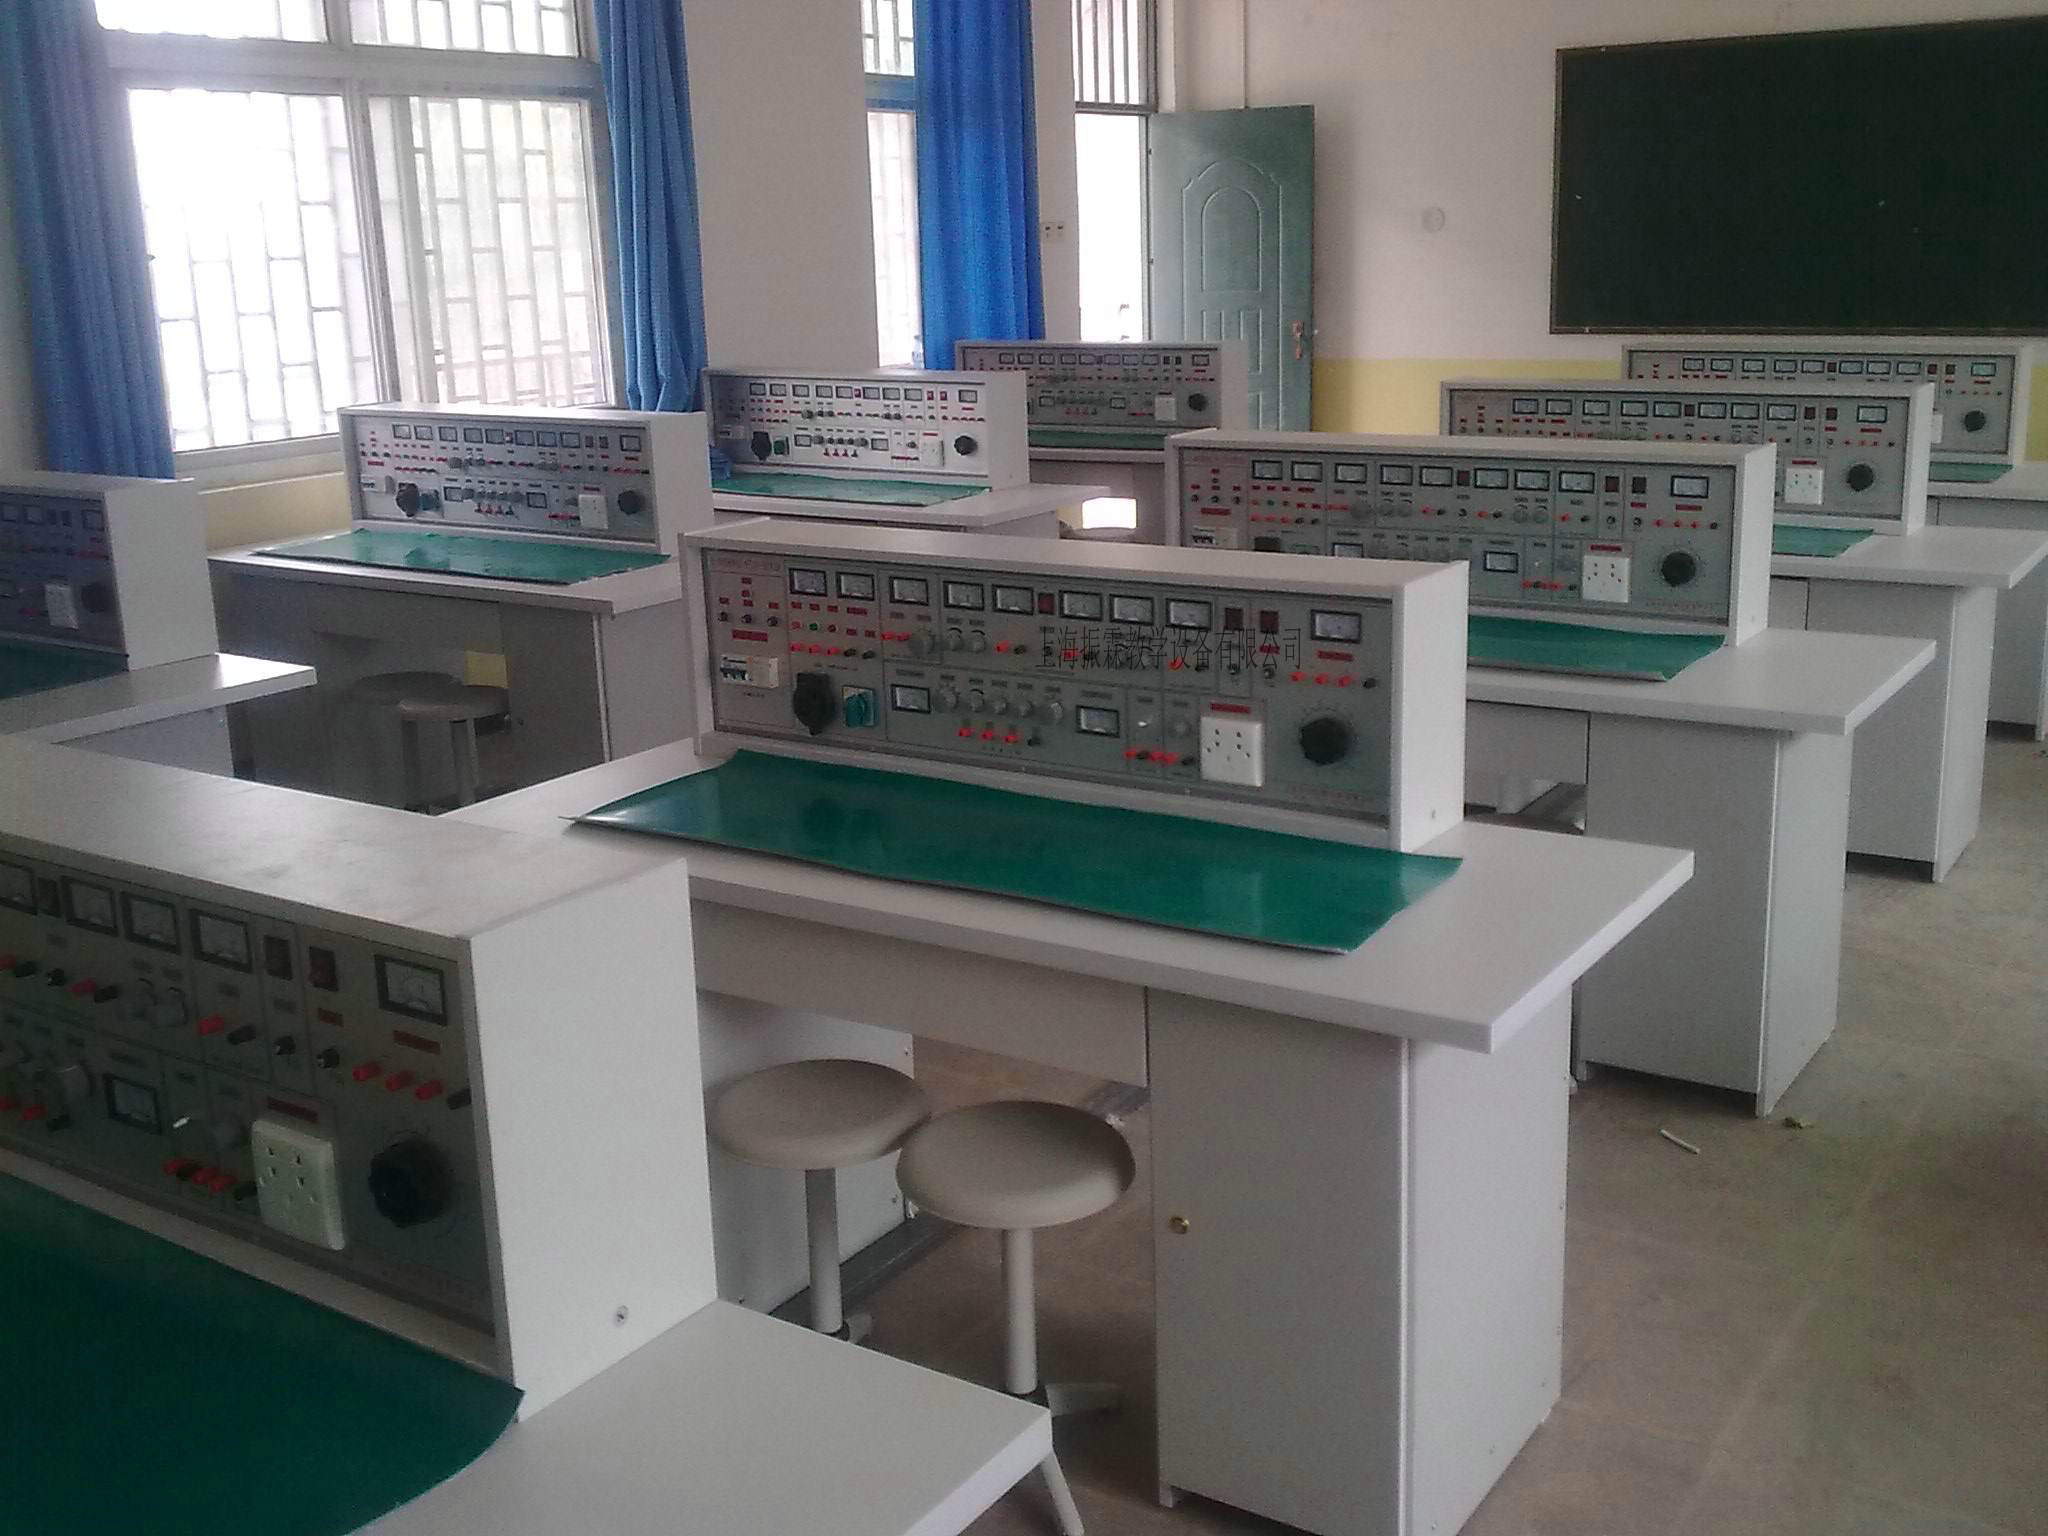 这一款是上海振霖教学设备公司生产的ZLCB-804型电工电子实验台整体教室图。